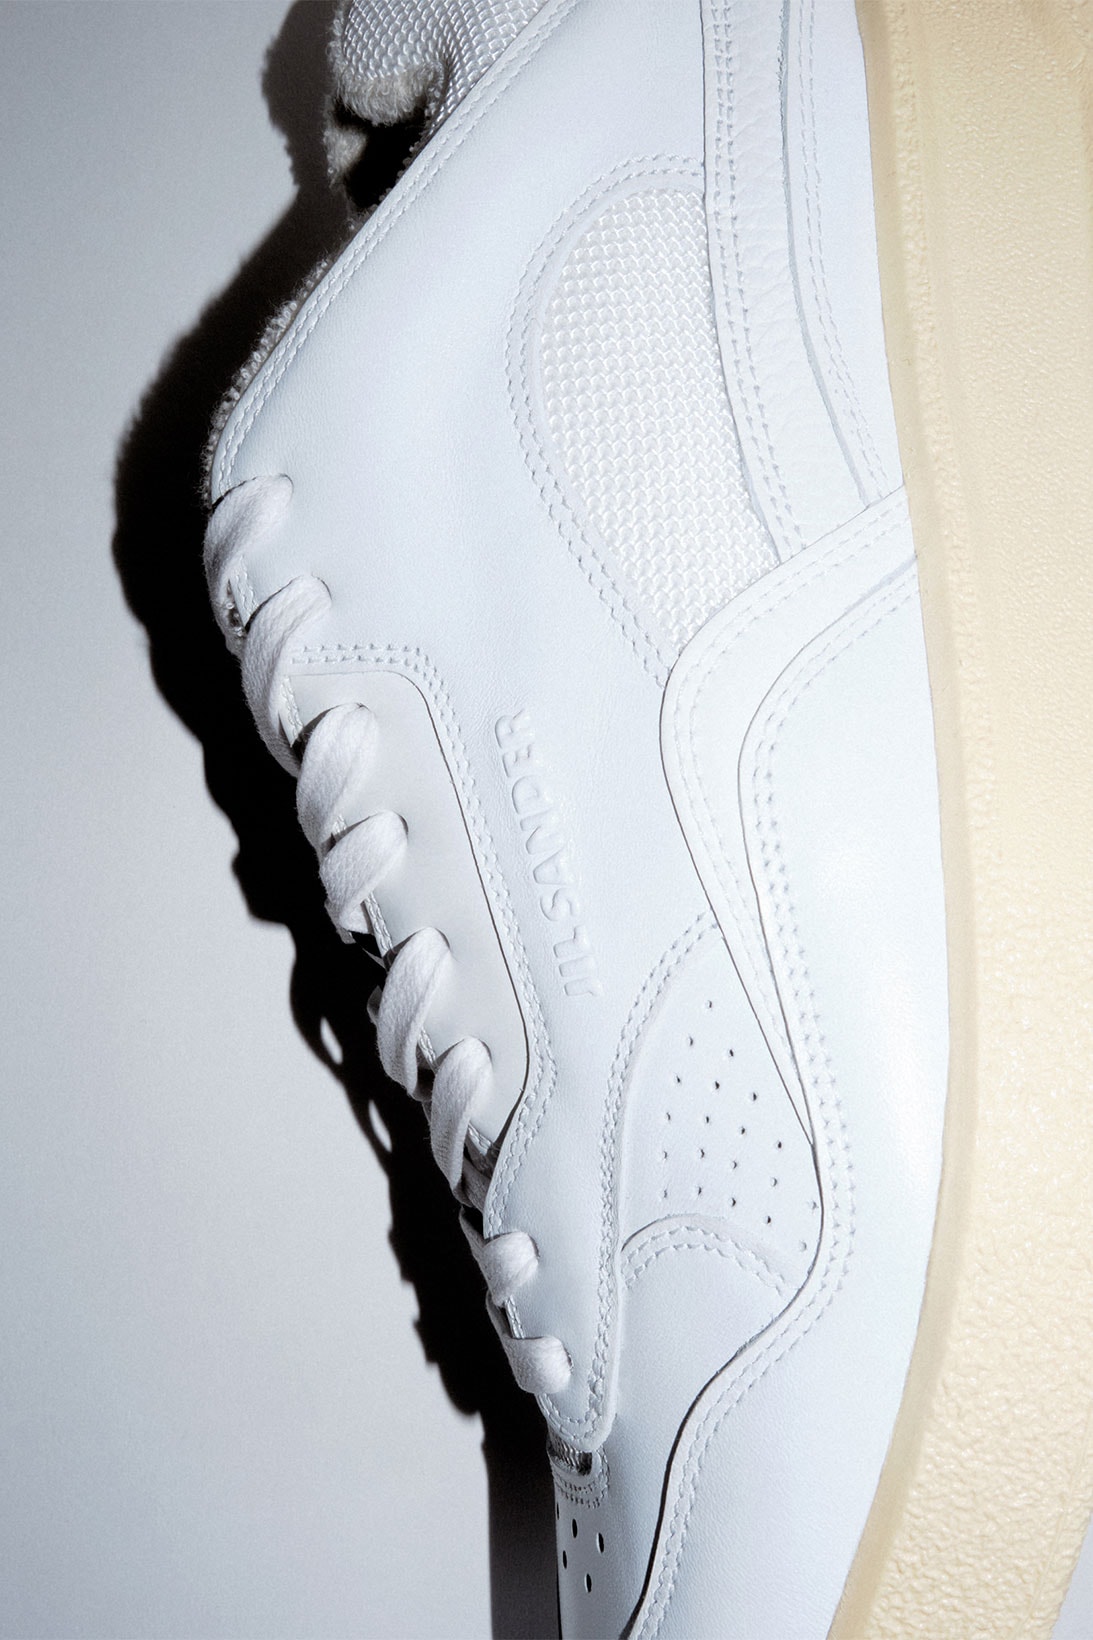 Jil Sander Unisex Sneakers Minimalist White Mid Low Top Release Info